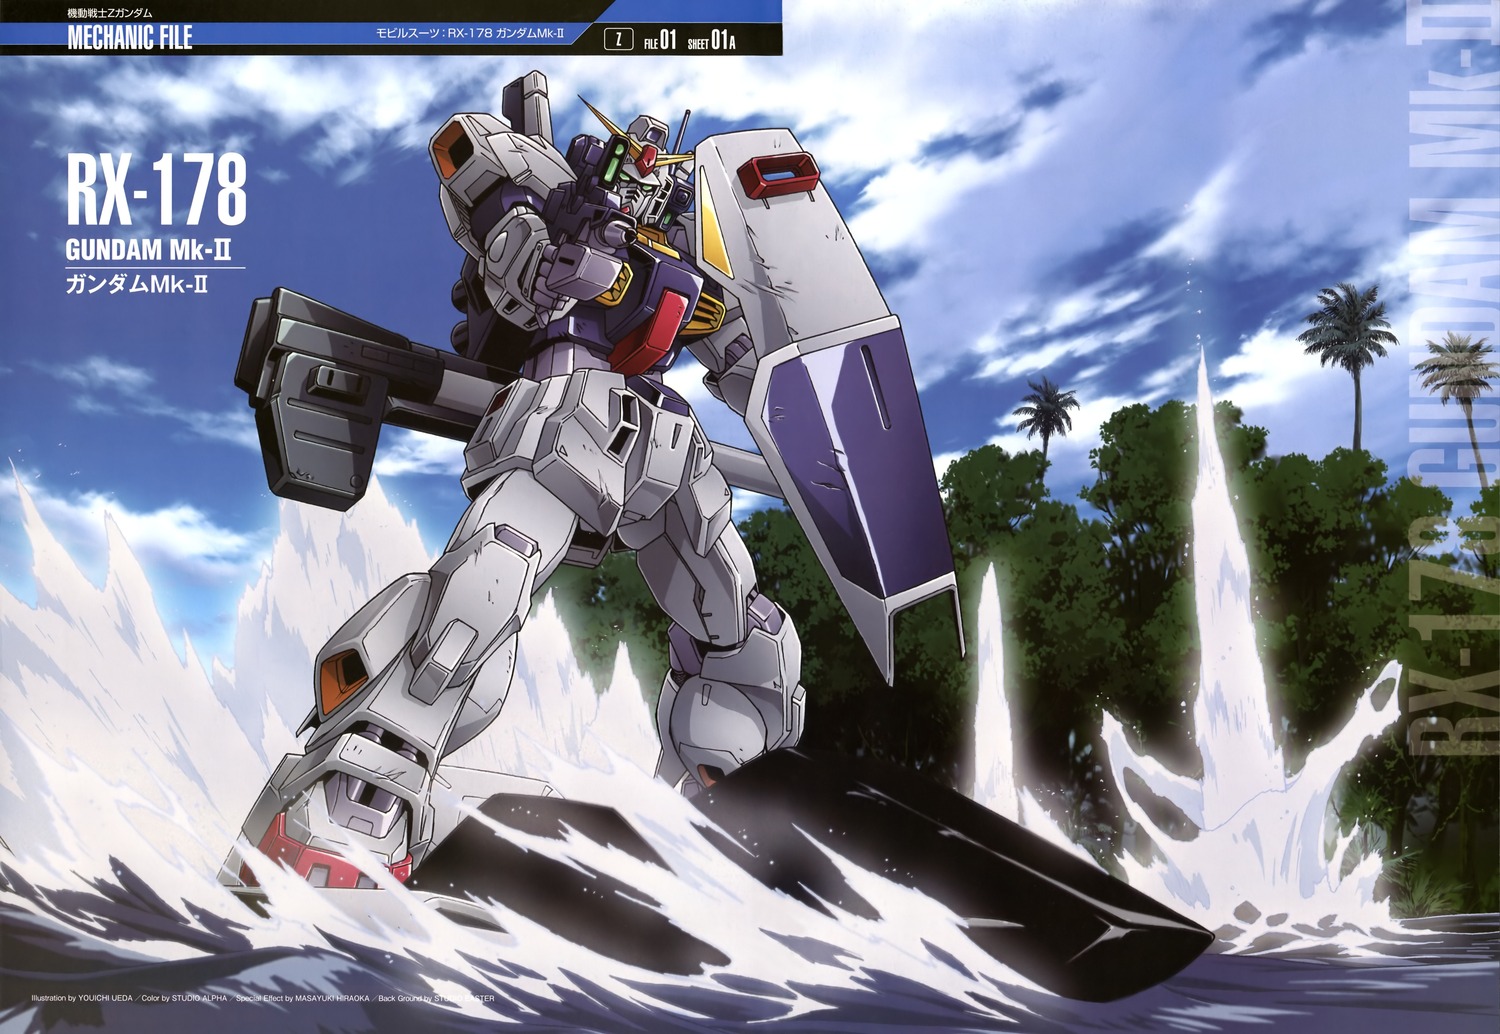 ... GUY: Mobile Suit Gundam Mechanic File - Wallpaper Size Images [Part 8